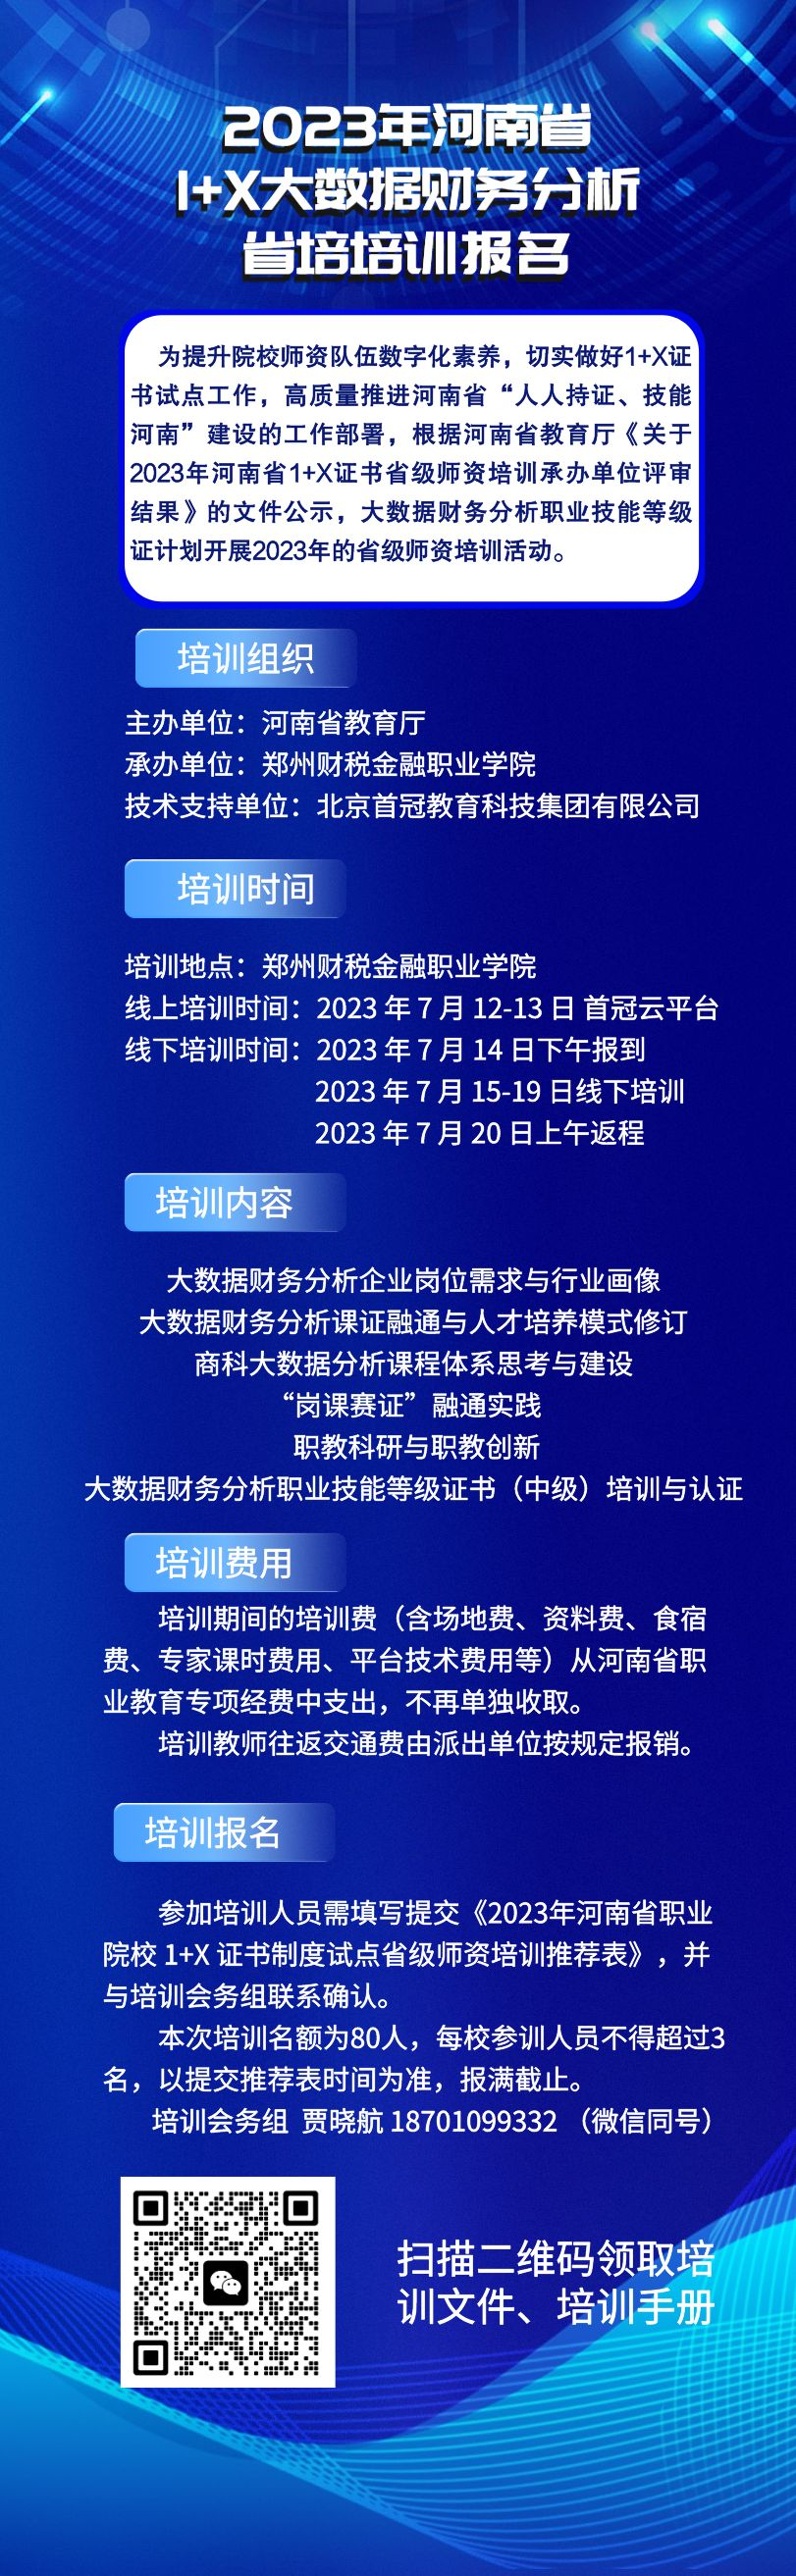 【培训报名】2023年河南省教育厅1+X大数据财务分析师资培训报名通知